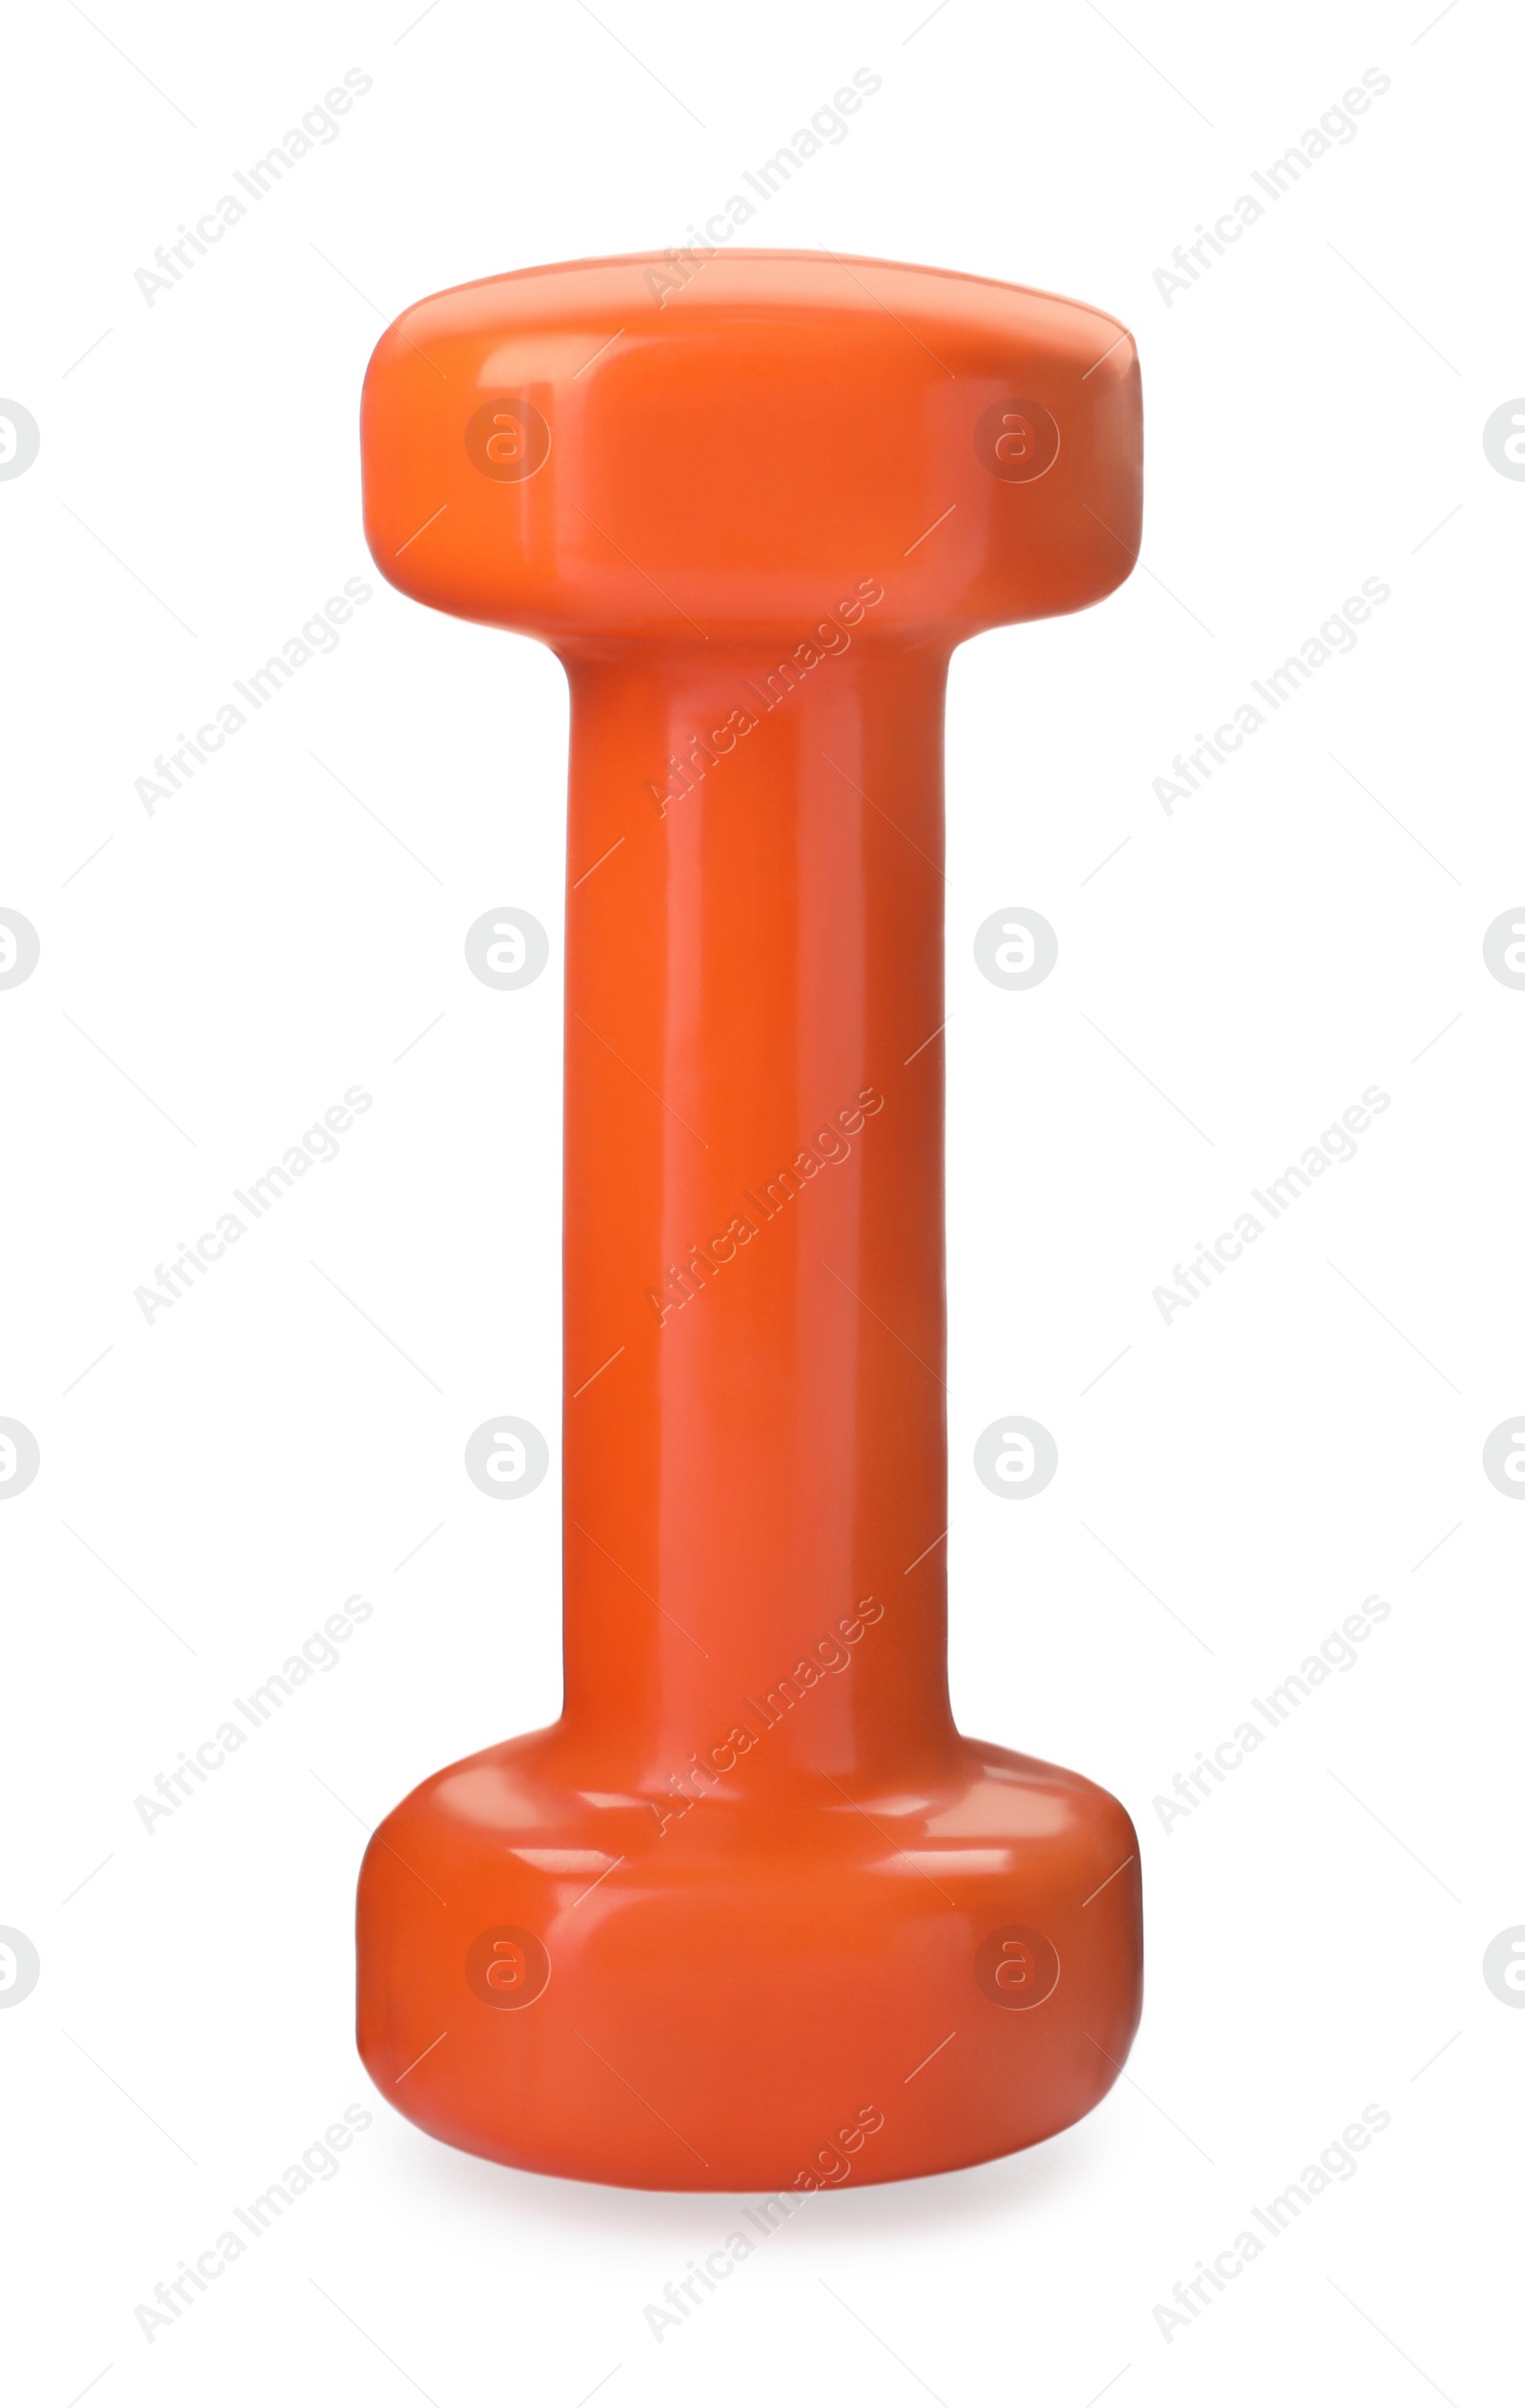 Photo of Orange dumbbell isolated on white. Weight training equipment